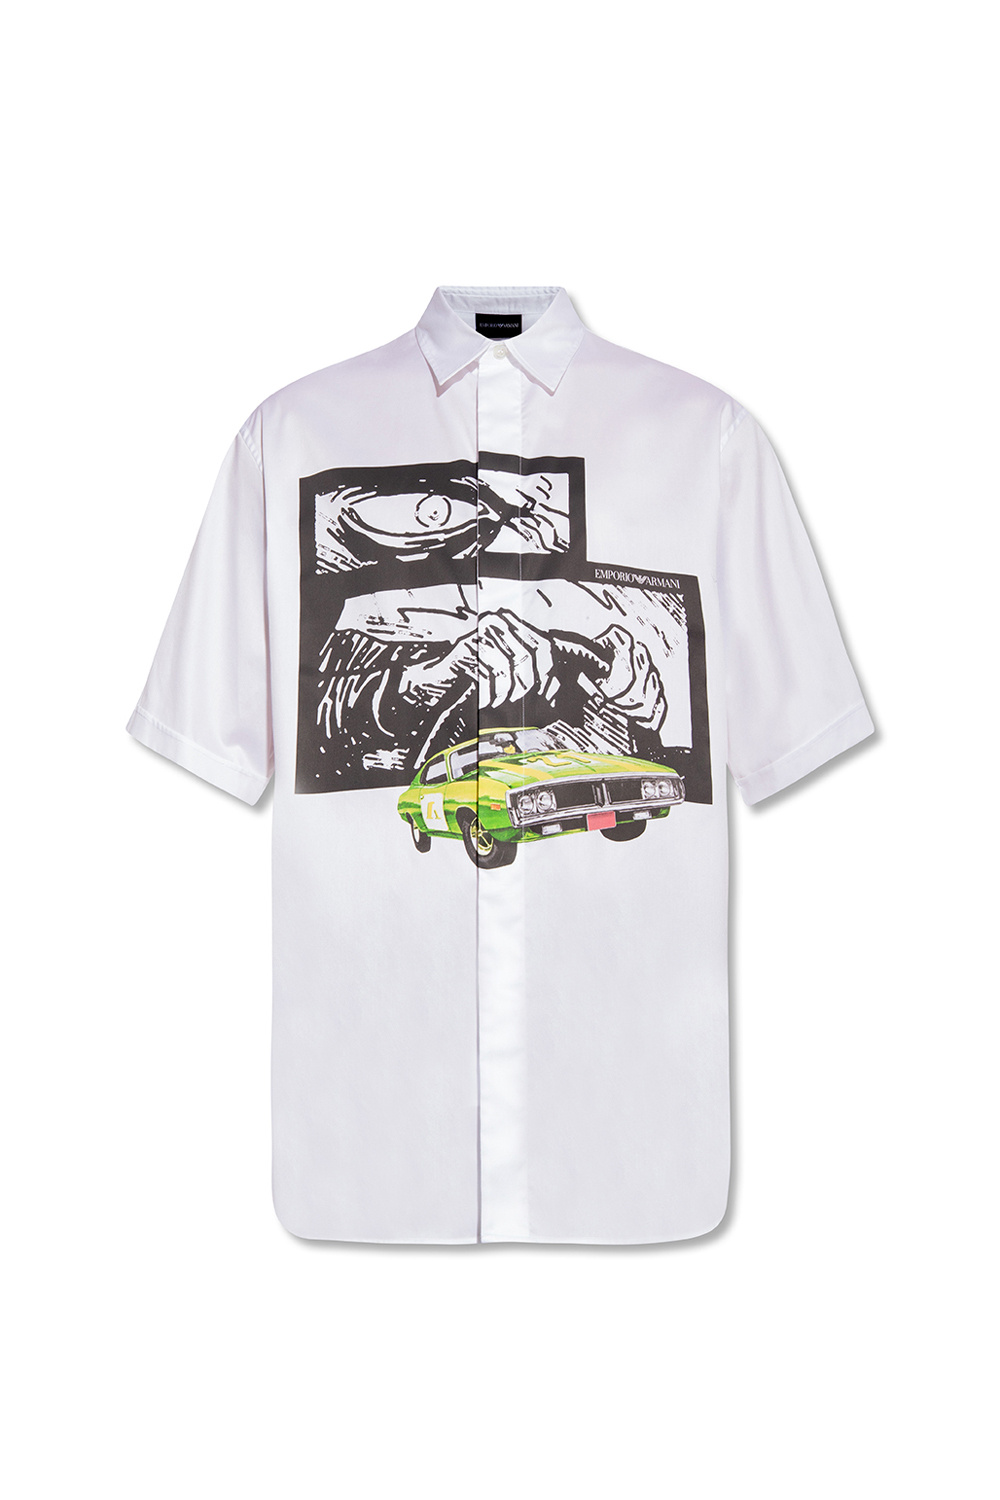 Emporio Armani ‘Racing’ collection shirt